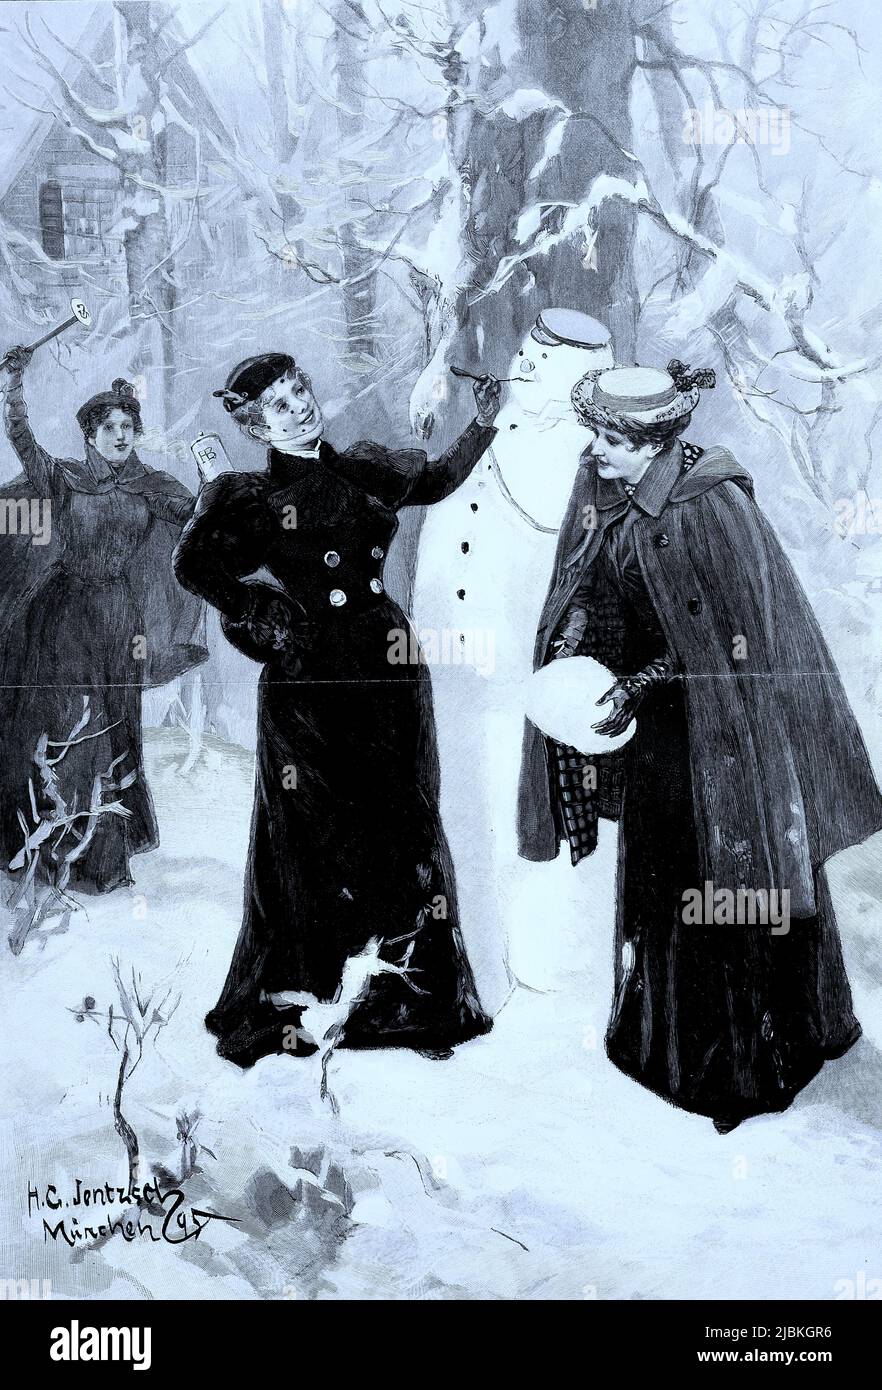 Winterfreuden, drei elegante Damen bauen einen Schneemann, um 1880, Deutschland, nach einem Aquarell von Hans Jentzsch, digital restaurierte Reproduktion einer Originalvorlage aus dem 19. Jahrhundert, genaues Originaldatum nicht bekannt Stock Photo